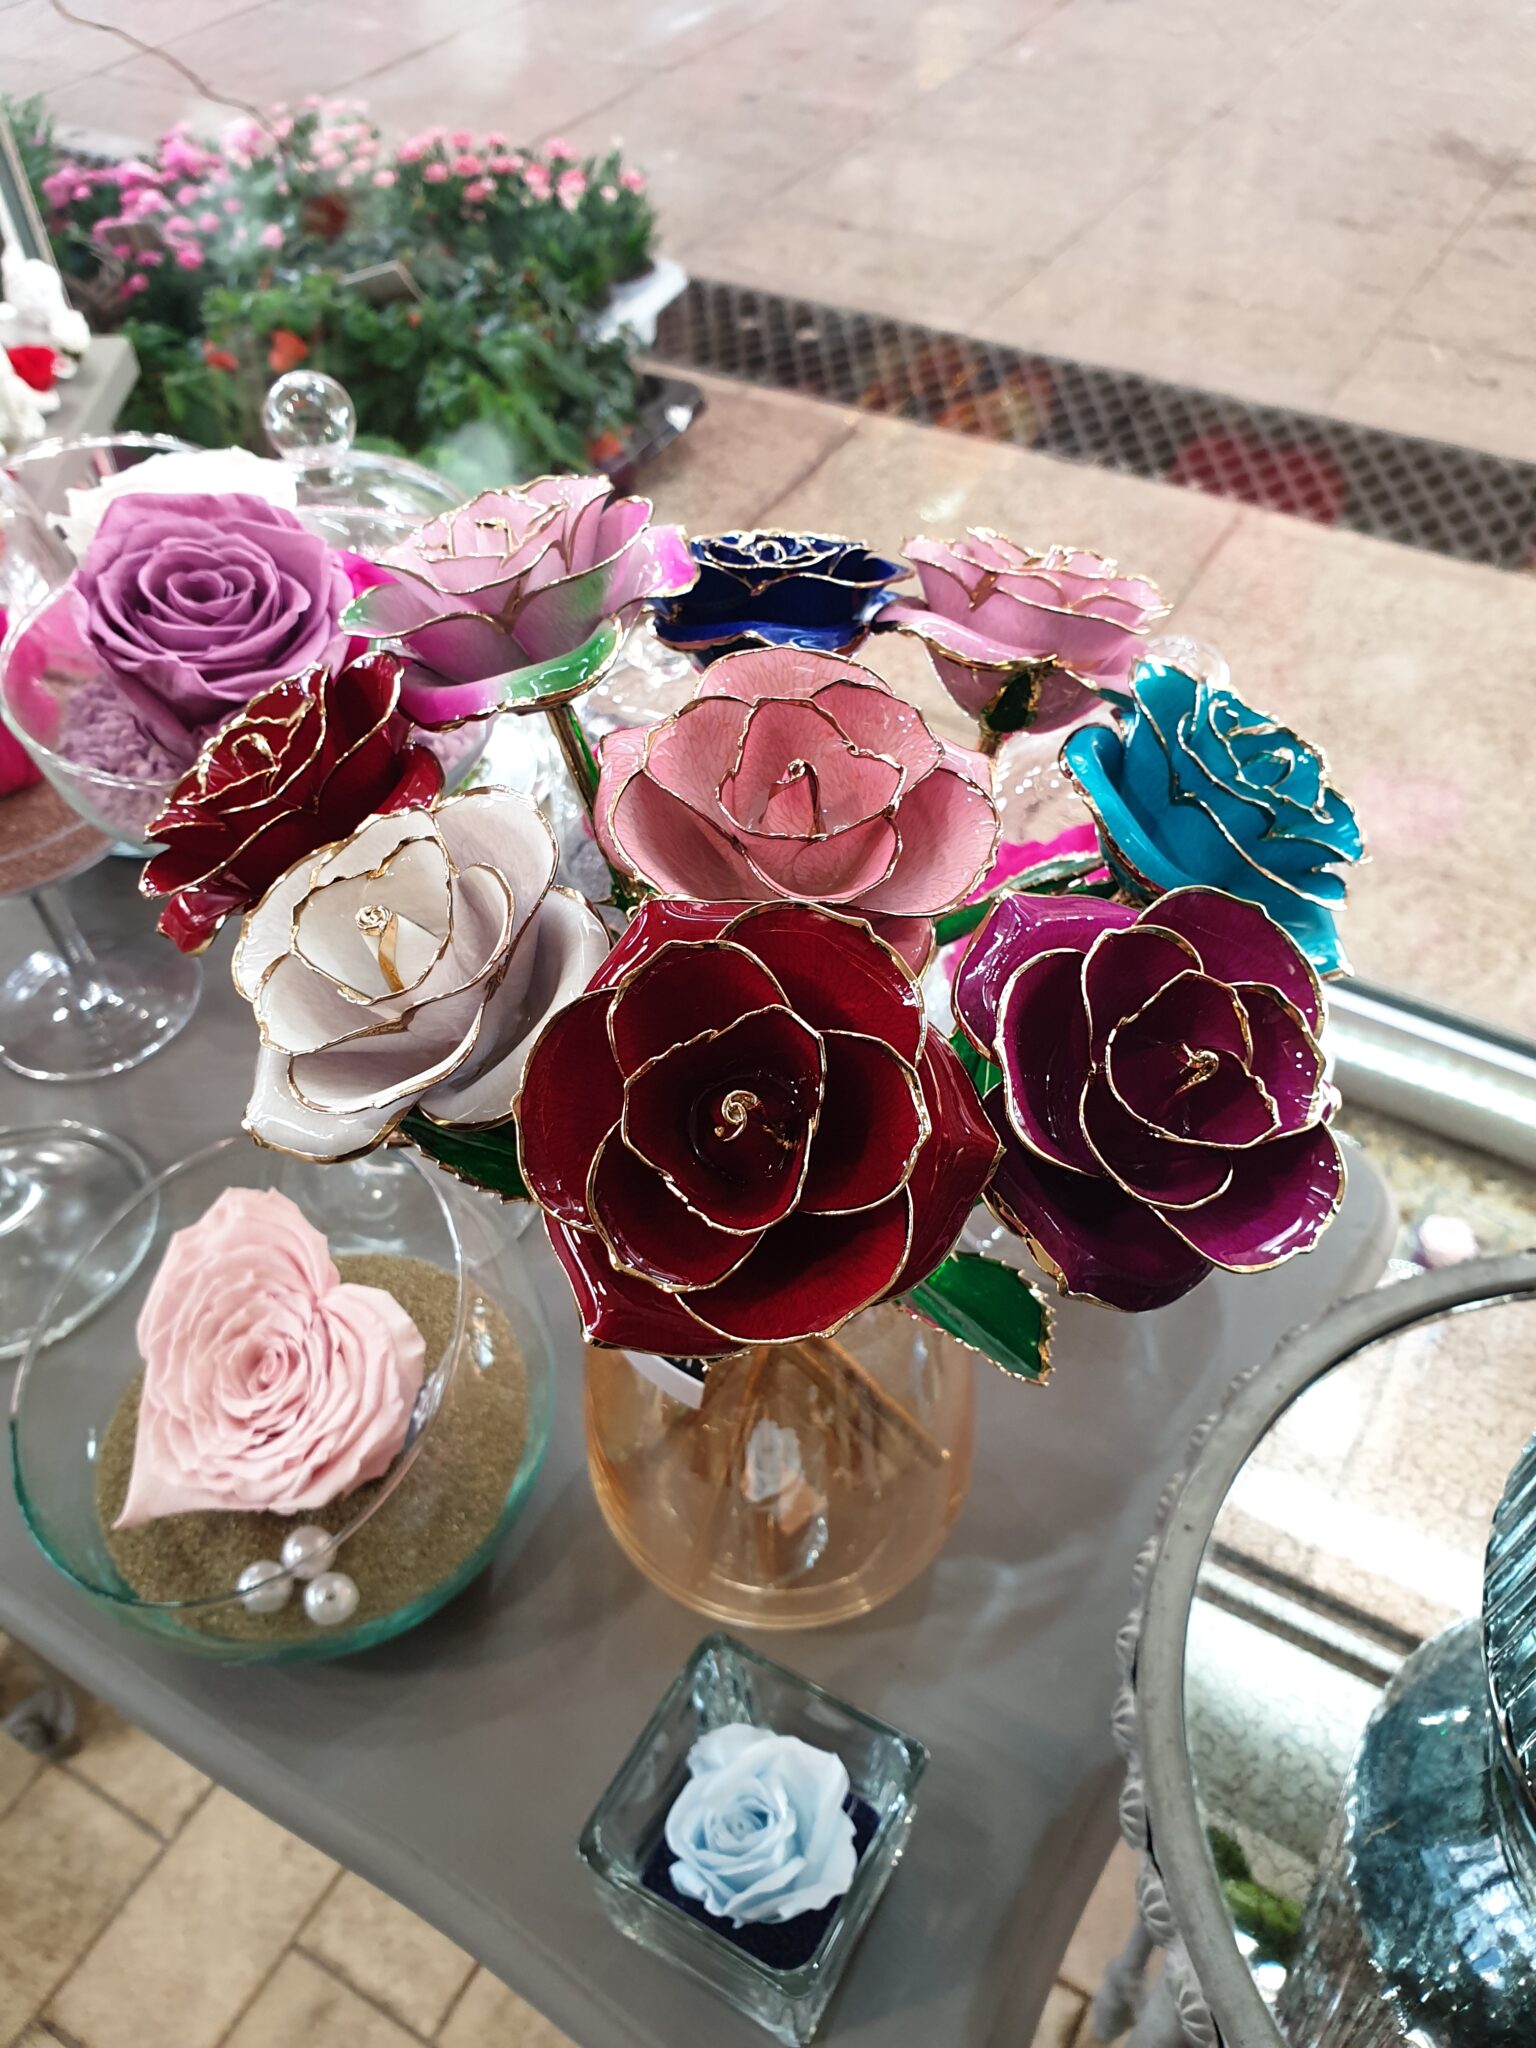 A découvrir dès aujourd'hui nos nouvelles créations de roses éternelles et nos oursons en roses tout mignons ?... [https://www.mariedanede.fr/blog/actualites/nos-nouvelles-roses-eternelles/]